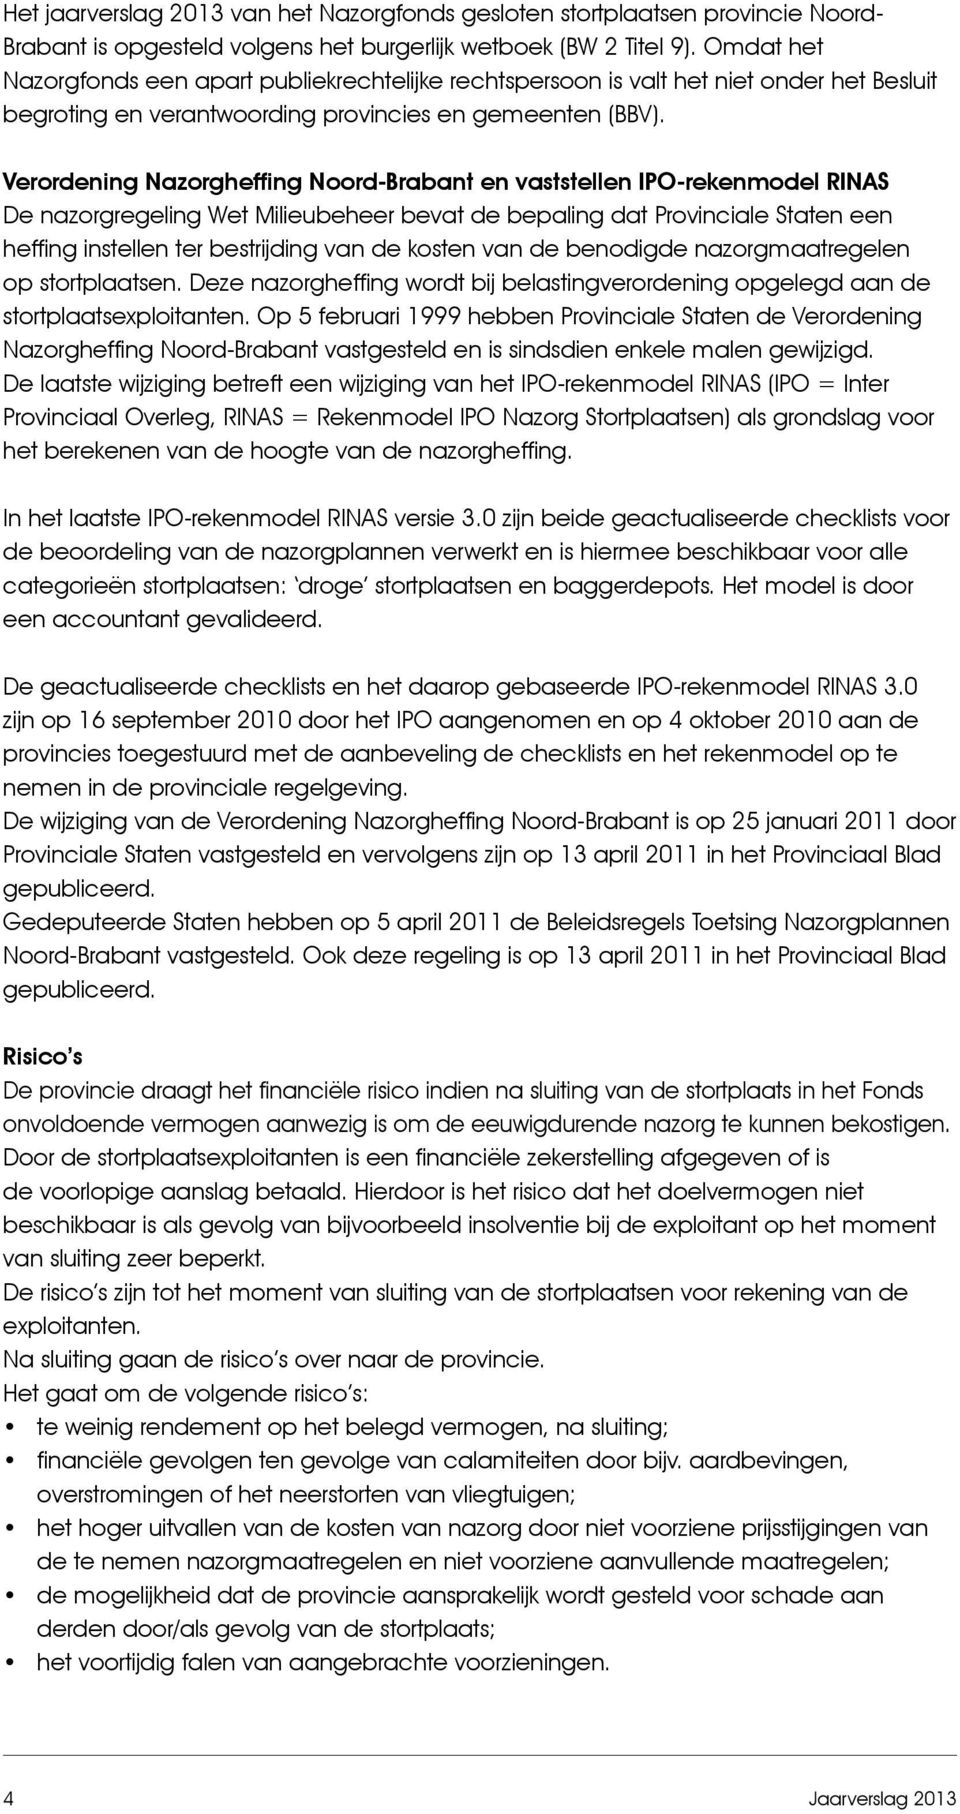 Verordening Nazorgheffing Noord-Brabant en vaststellen IPO-rekenmodel RINAS De nazorgregeling Wet Milieubeheer bevat de bepaling dat Provinciale Staten een heffing instellen ter bestrijding van de